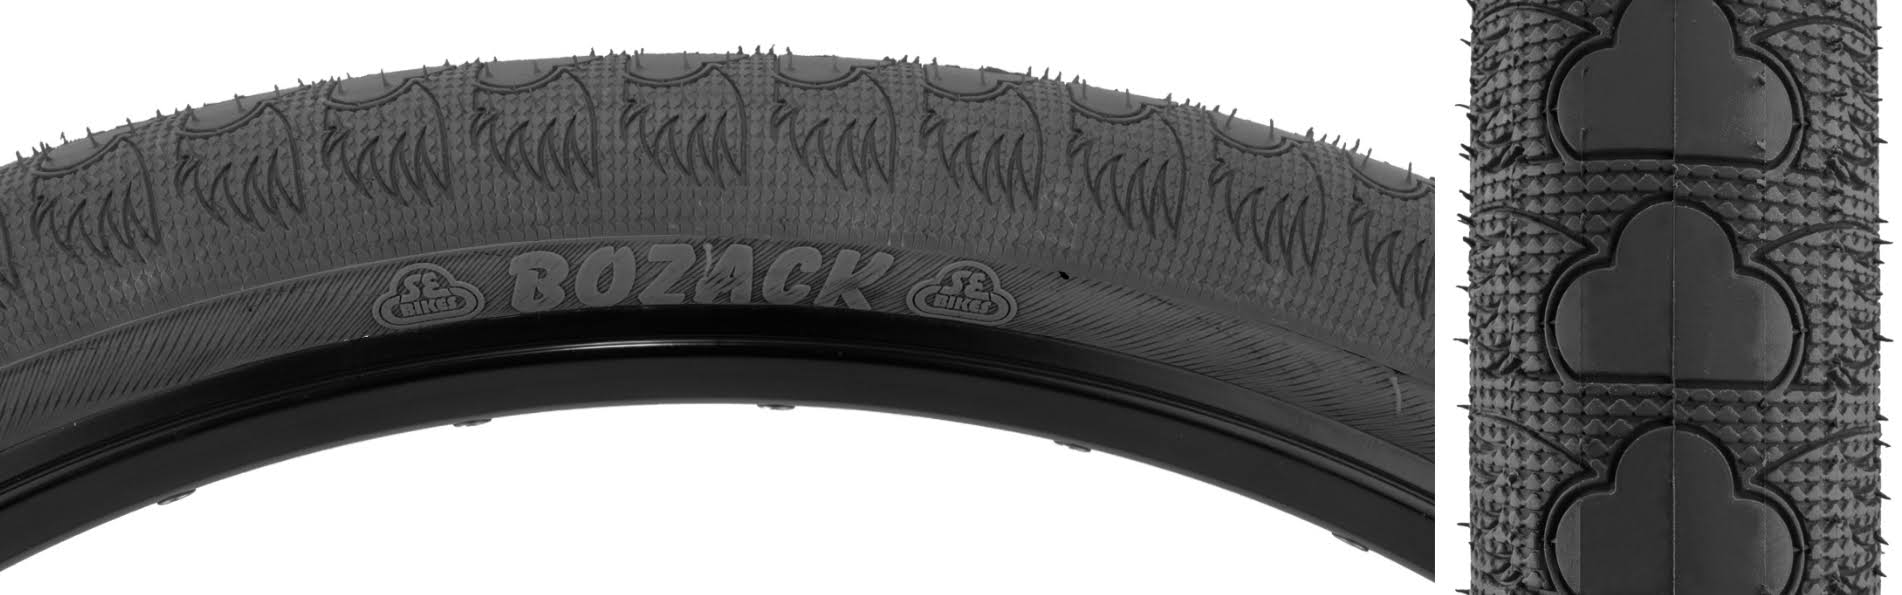 SE Bikes Racing Bozack BMX Tire 24x2.4 Black Wire Bead 27TPI MPC